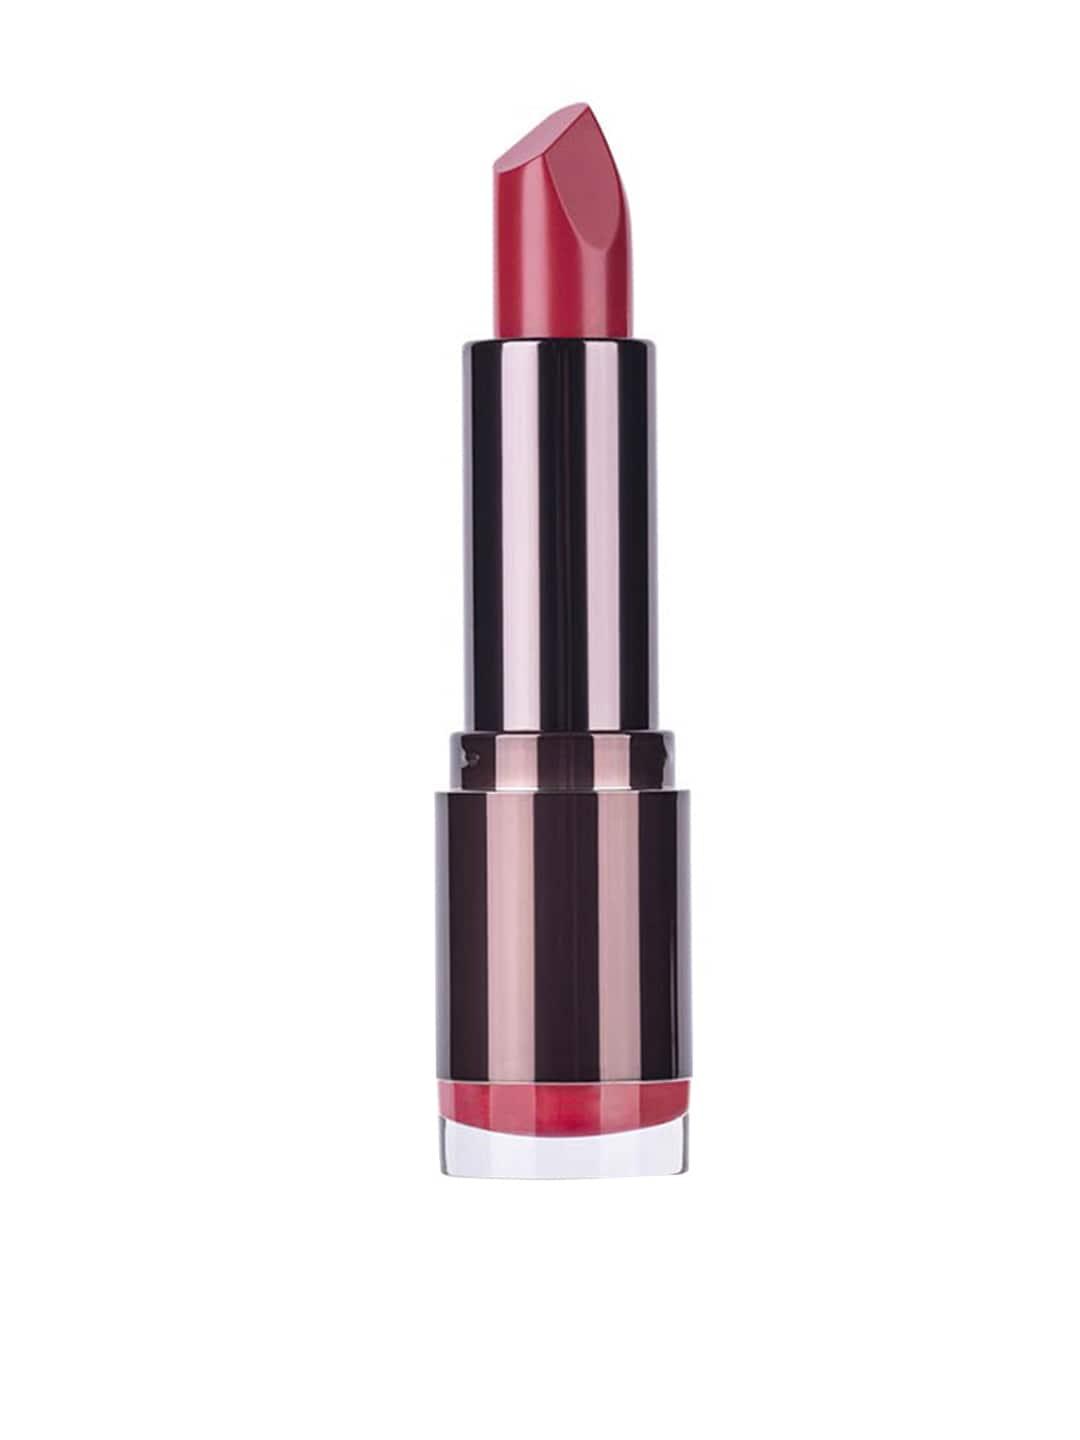 Colorbar Velvet Matte Lipstick with Vitamin E 4.2 g - Brick-O-La 042